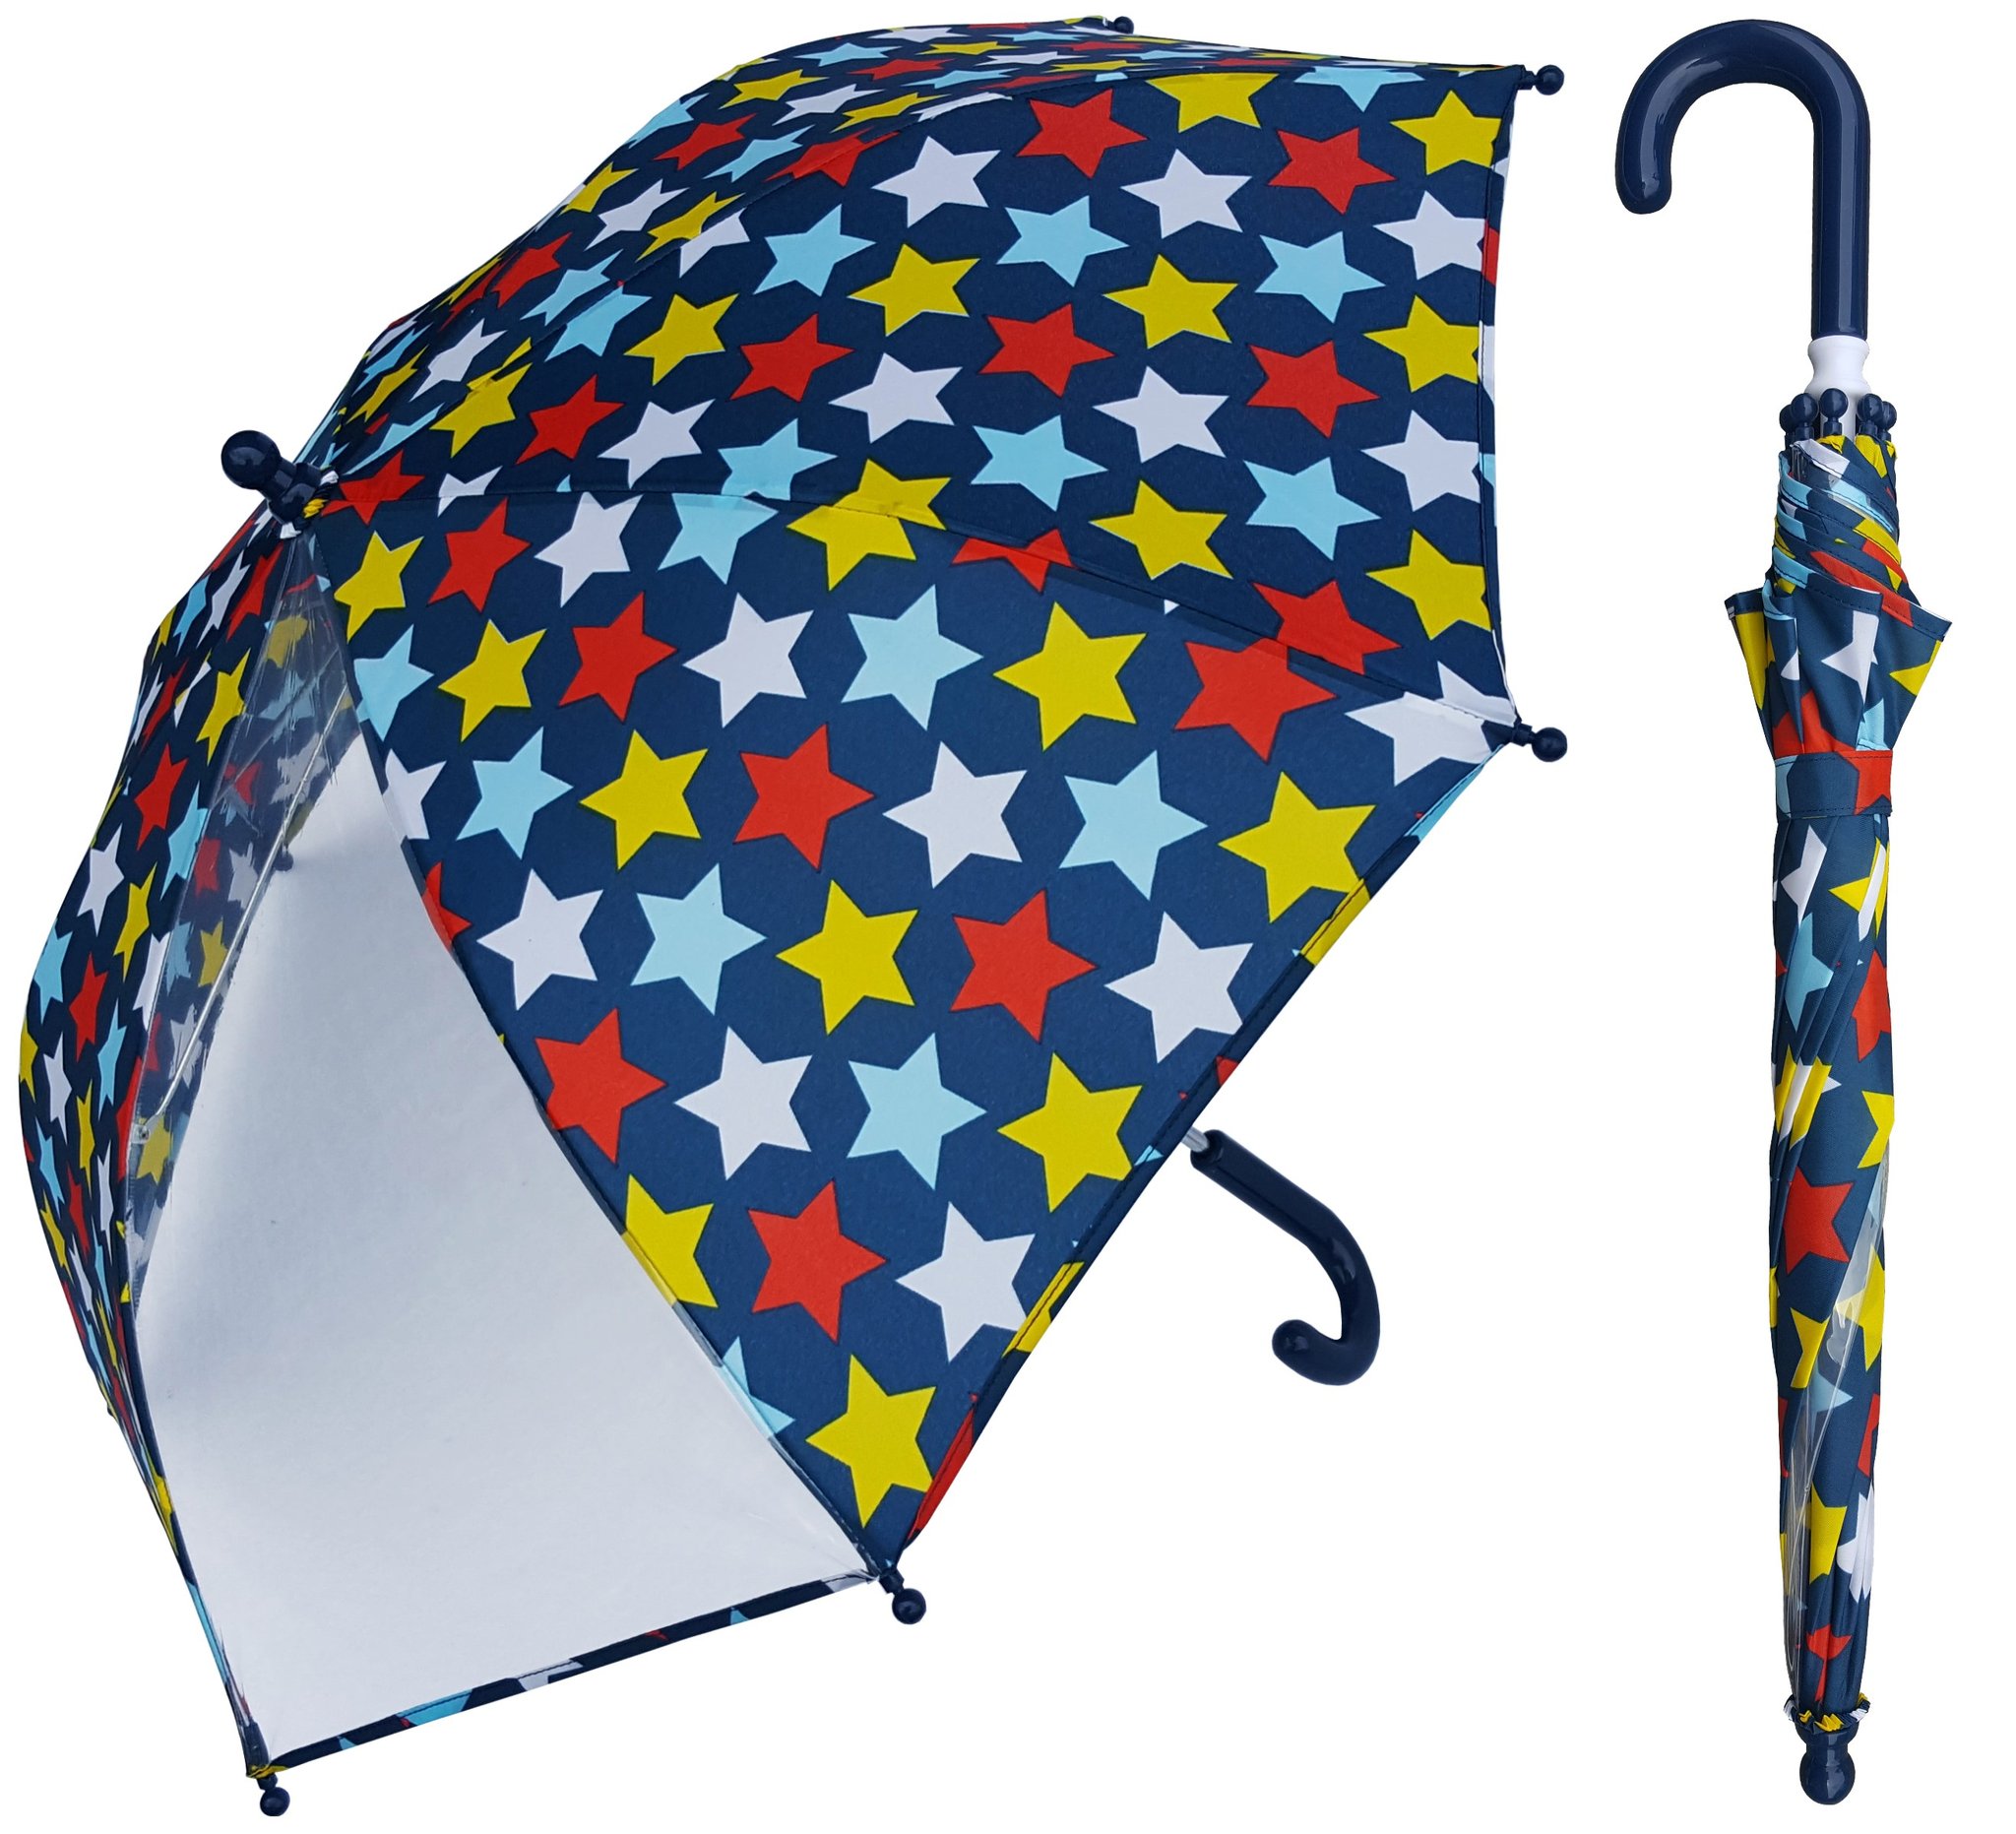 19-Zoll-Kinderregenschirm individuell gestalten. Farbdruck mit POE-Bedienfeld starten.